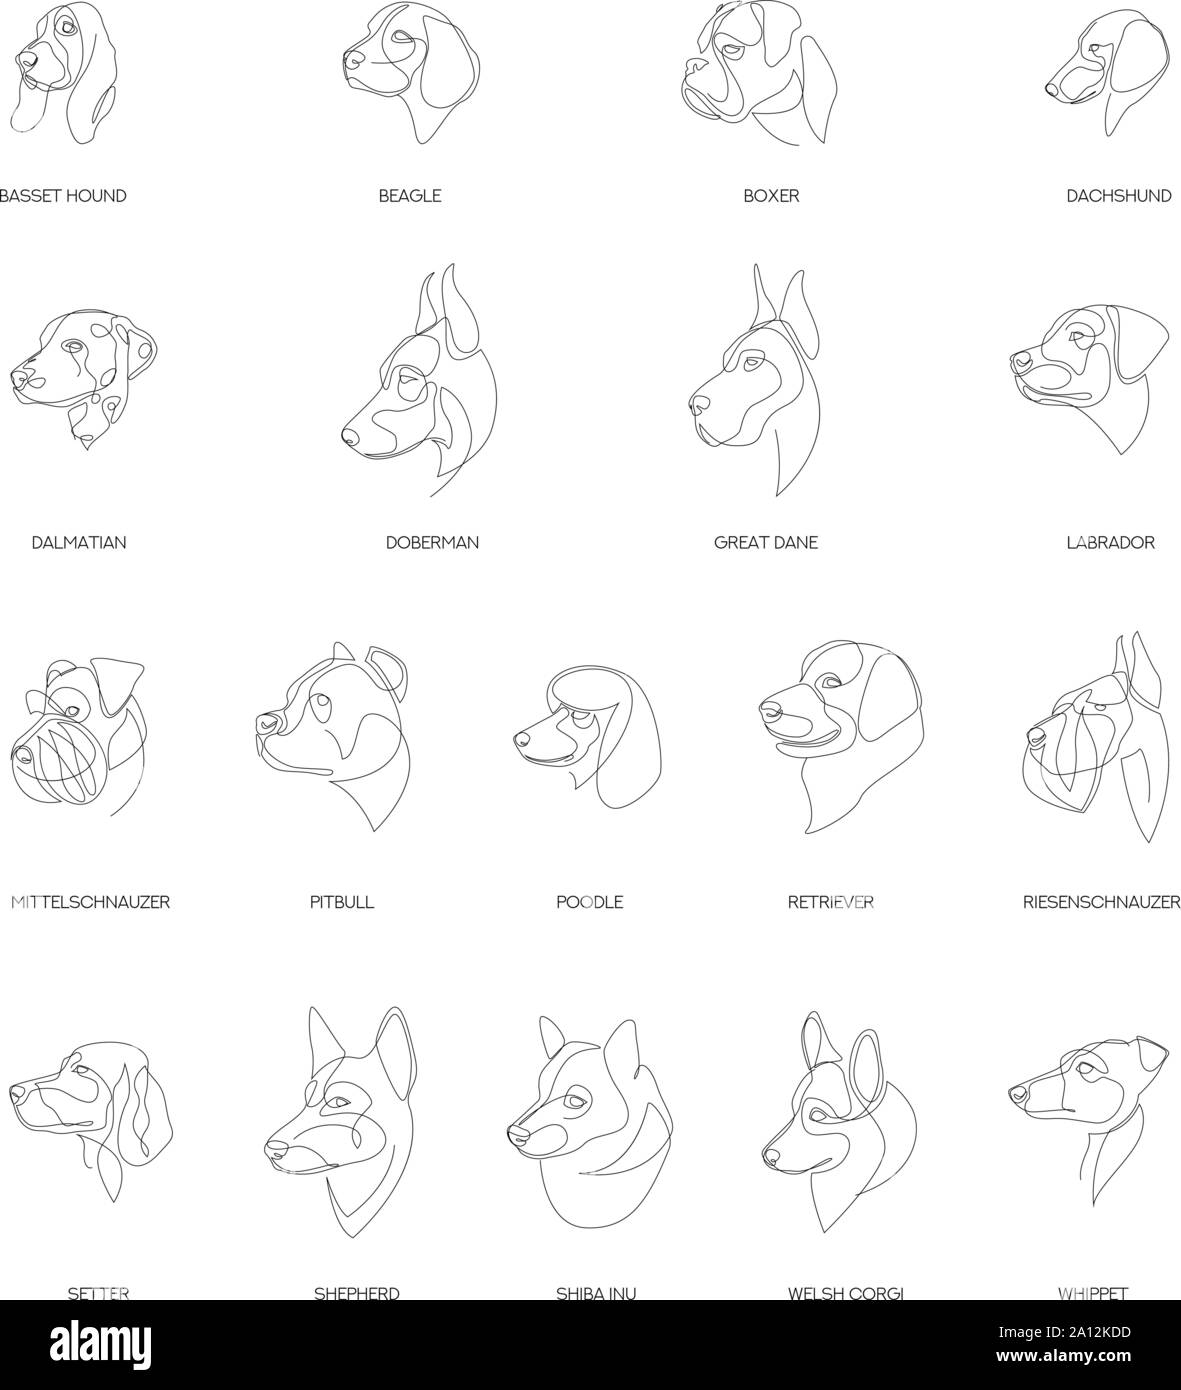 Rassen von Hunden im minimalistischen Stil eingerichtet. Eine Zeile Hunde.  Minimale Vector Illustration Stock-Vektorgrafik - Alamy